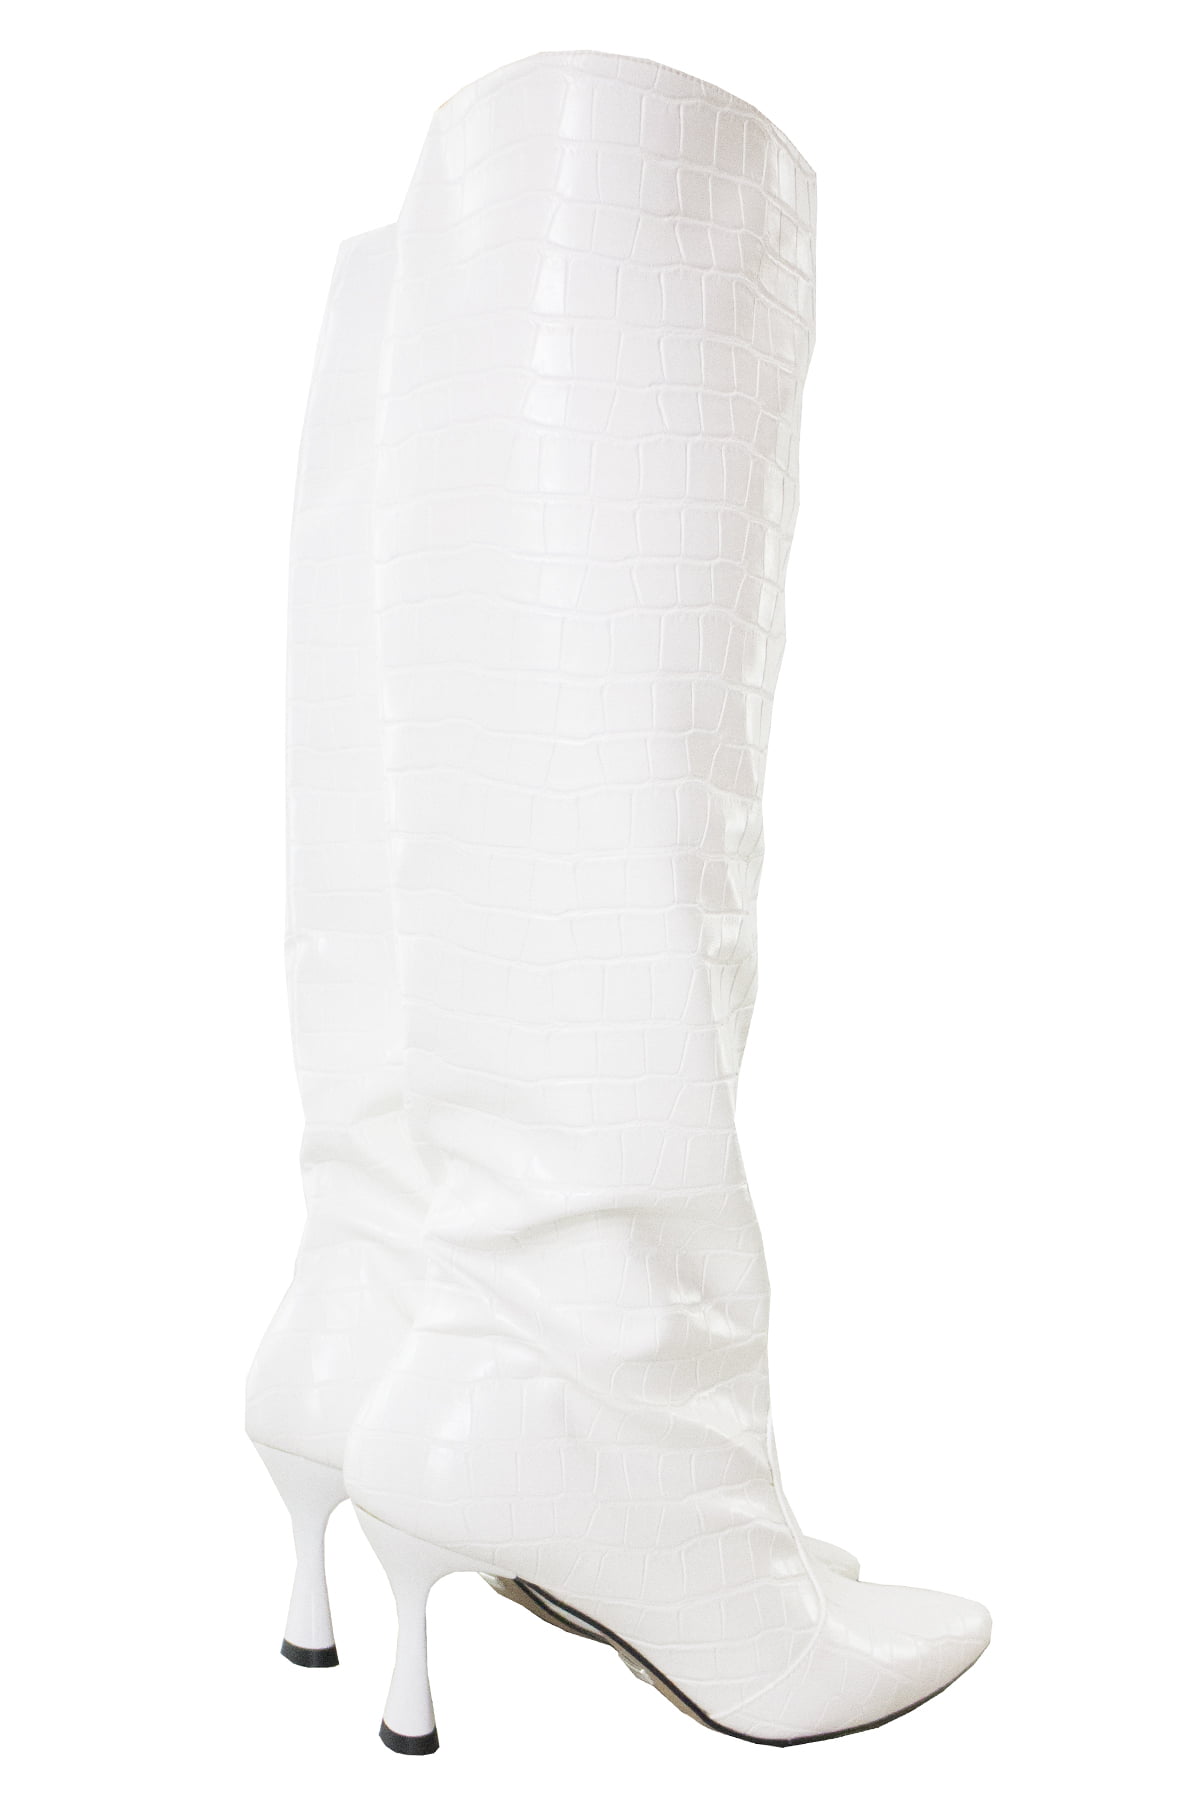 Stivali donna al ginocchio bianchi coccodrillo con cerniera laterale interna e tacco cono